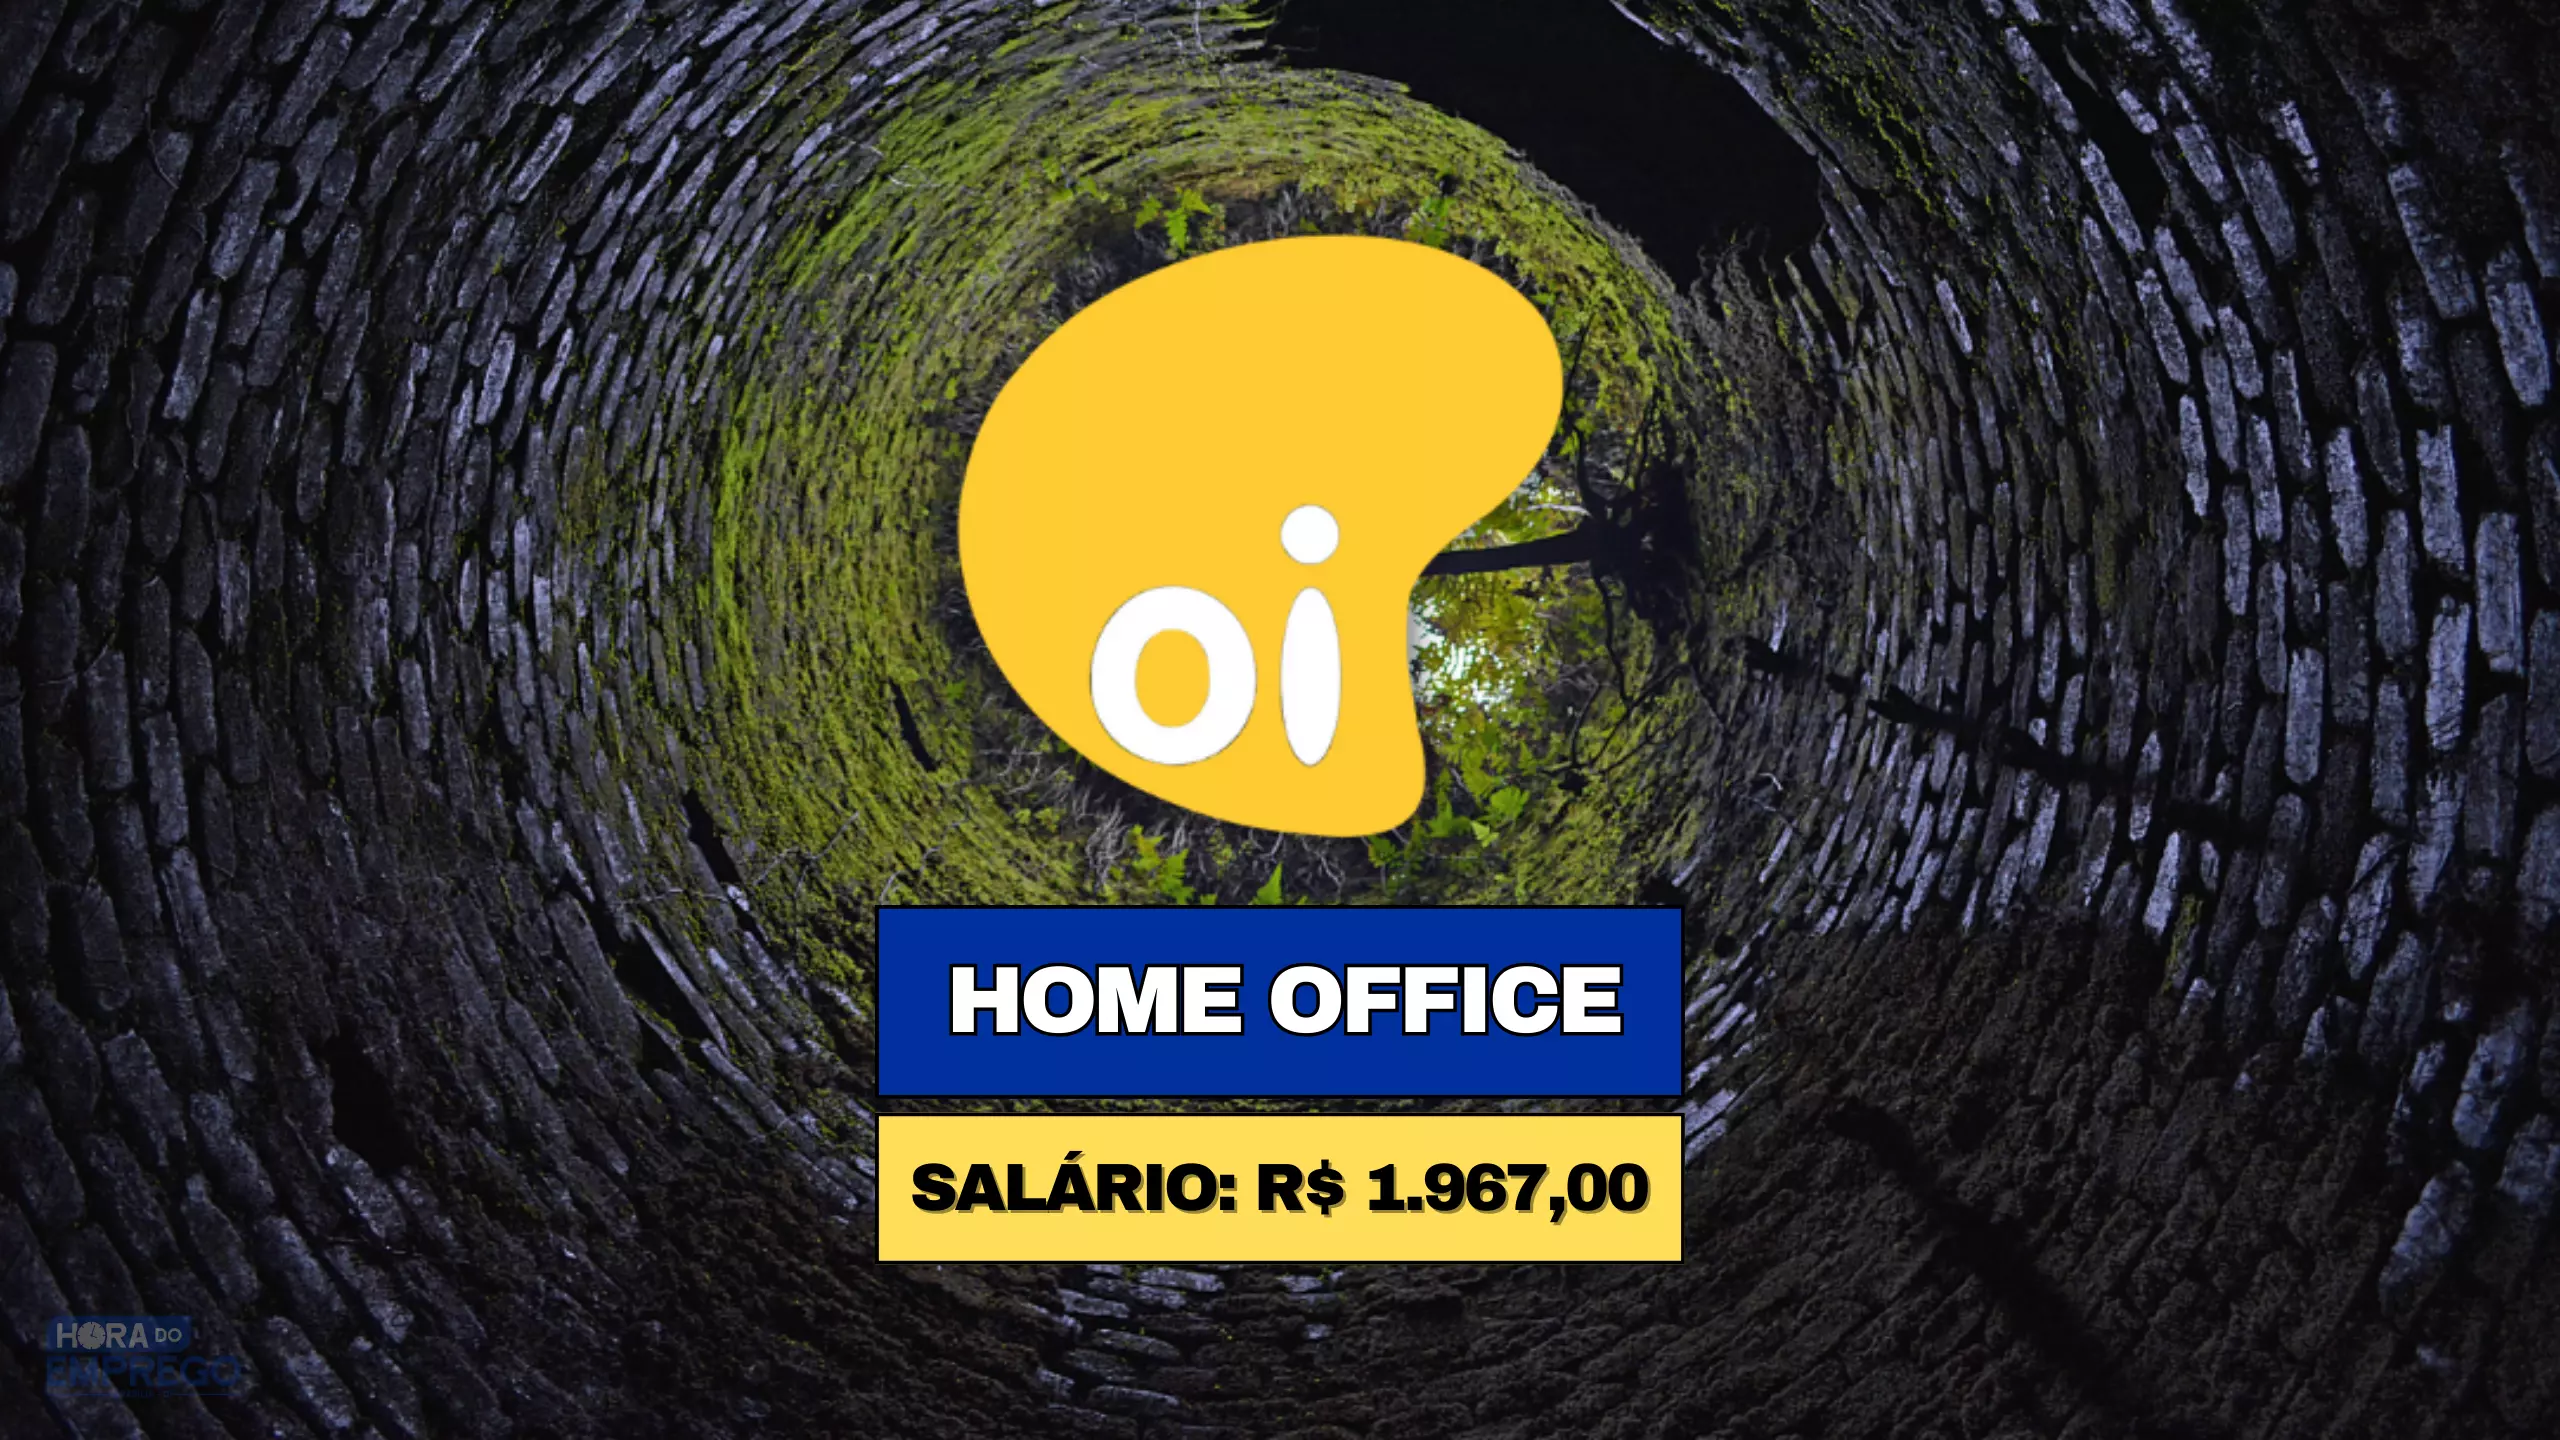 Operadora OI abre vaga 100% HOME OFFICE para Consultor de Vendas com salário de R$ 1.967,00